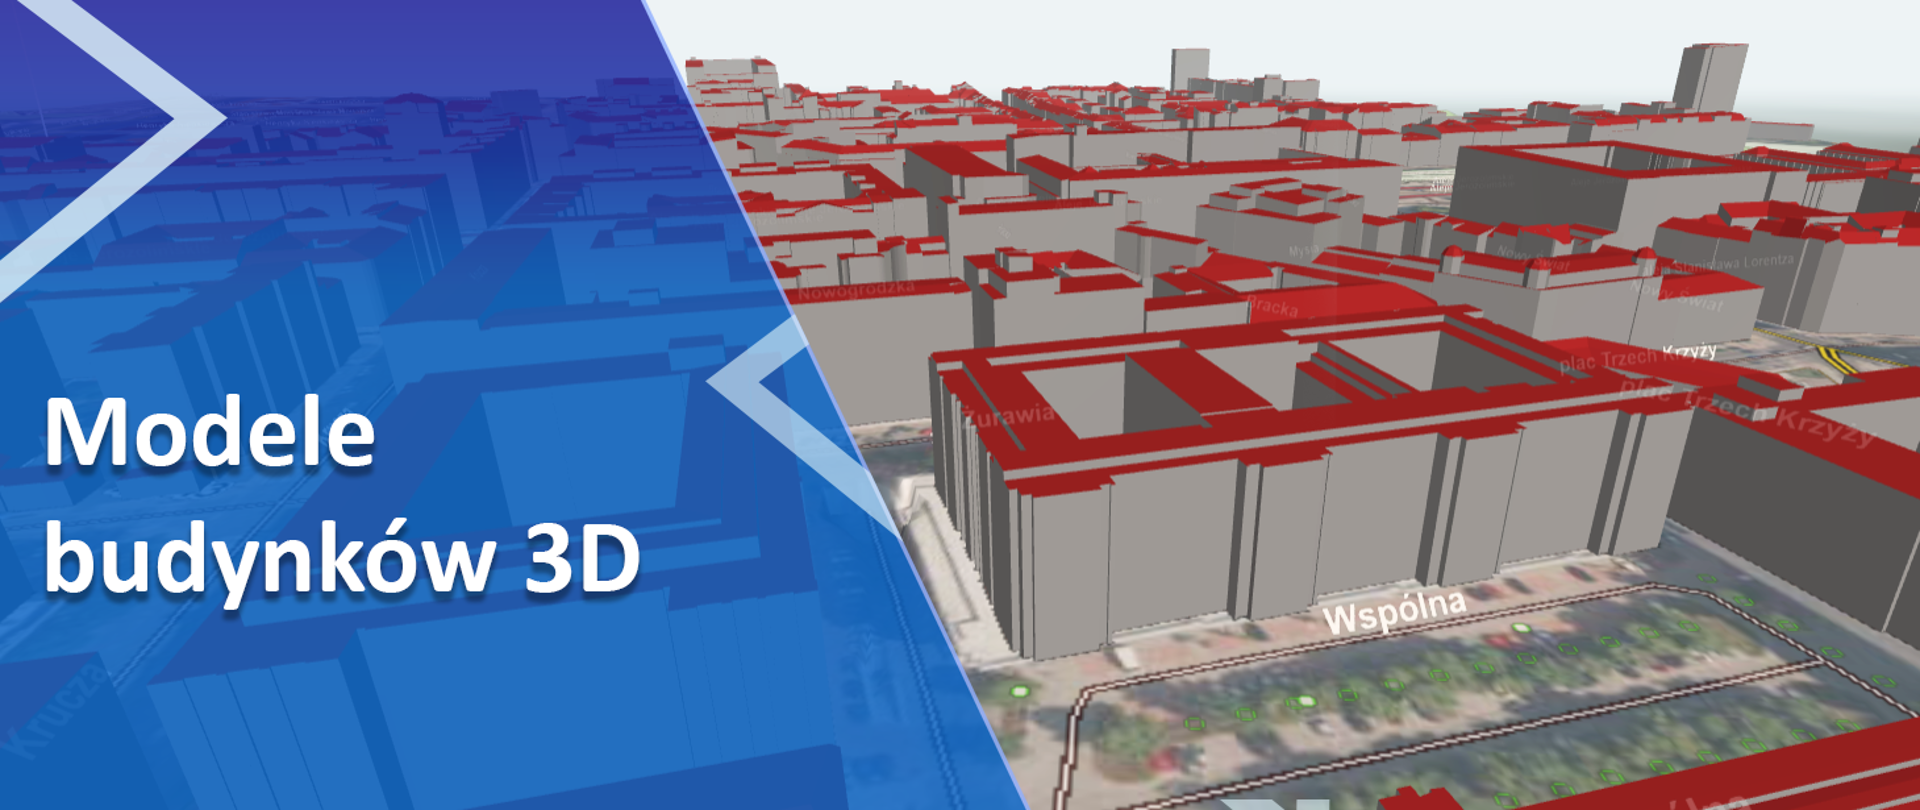 Po lewej stronie na niebieskim tle napis: "Modele budynków 3D", a po prawej zrzut ekranu z Geoportalu 3D.